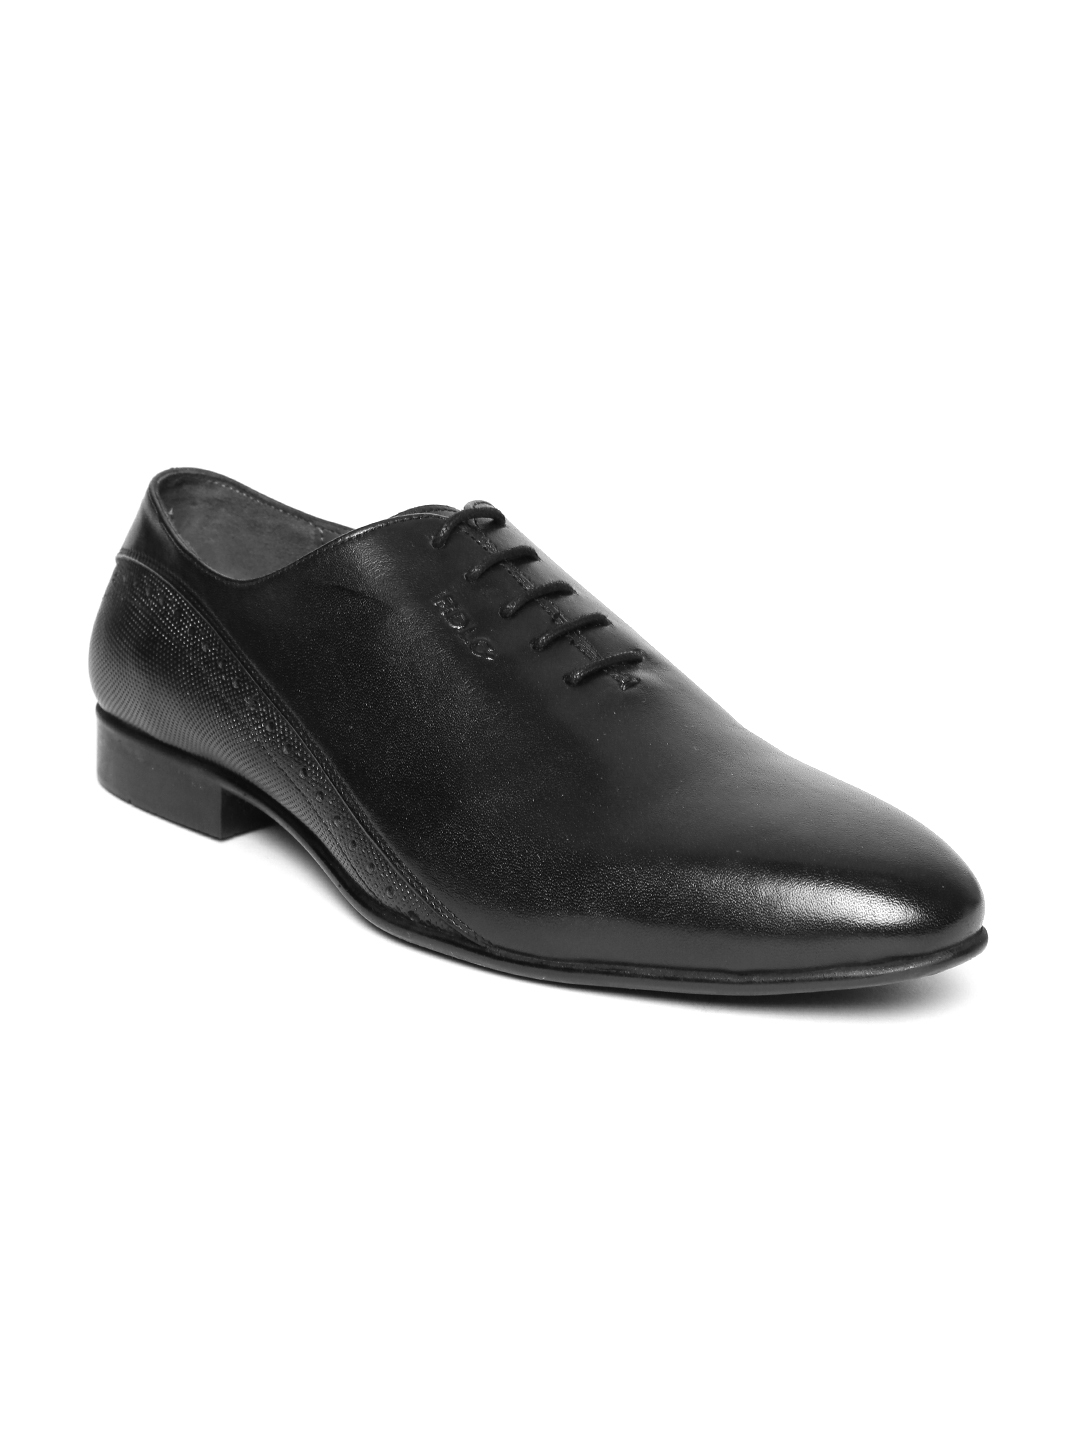 Buy Lee Cooper Men Black Leather Formal Oxfords - Formal Shoes for Men ...